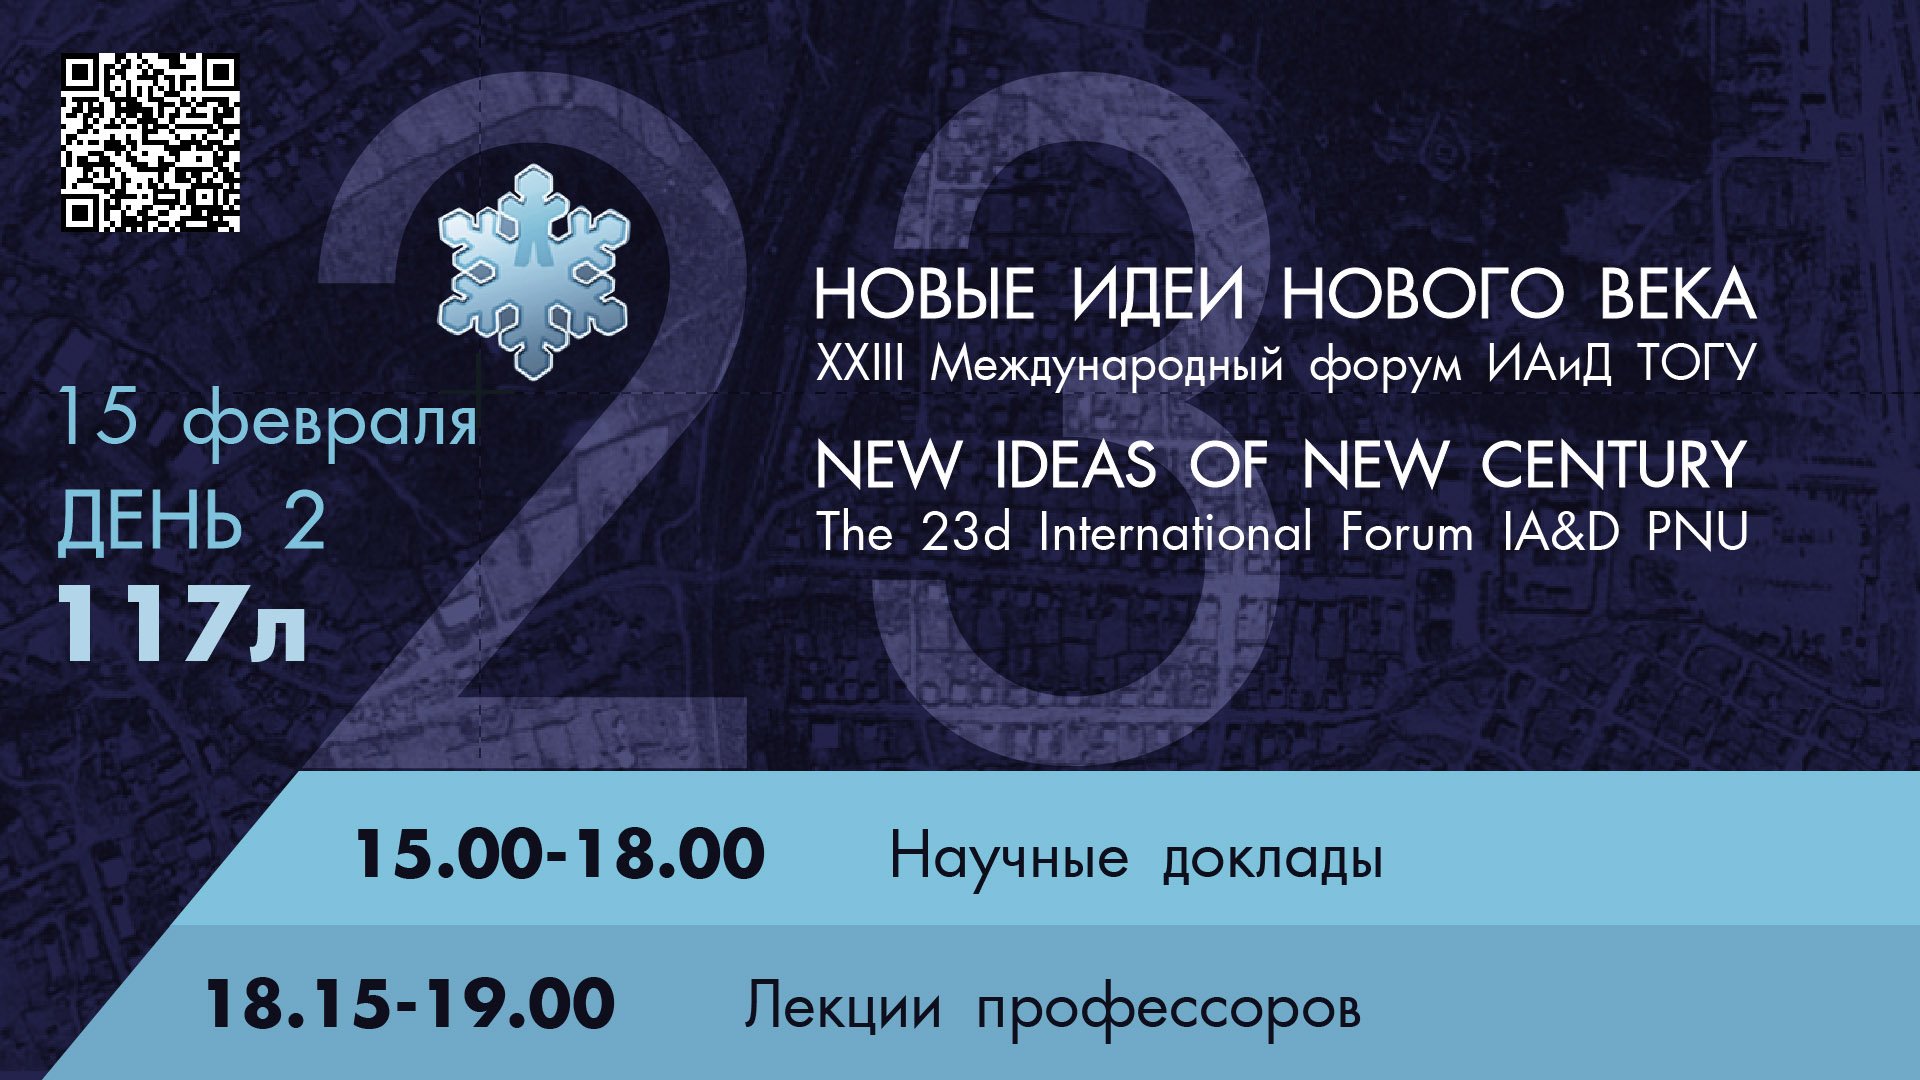 XXIII Международный форум "Новые идеи нового века" 2 день